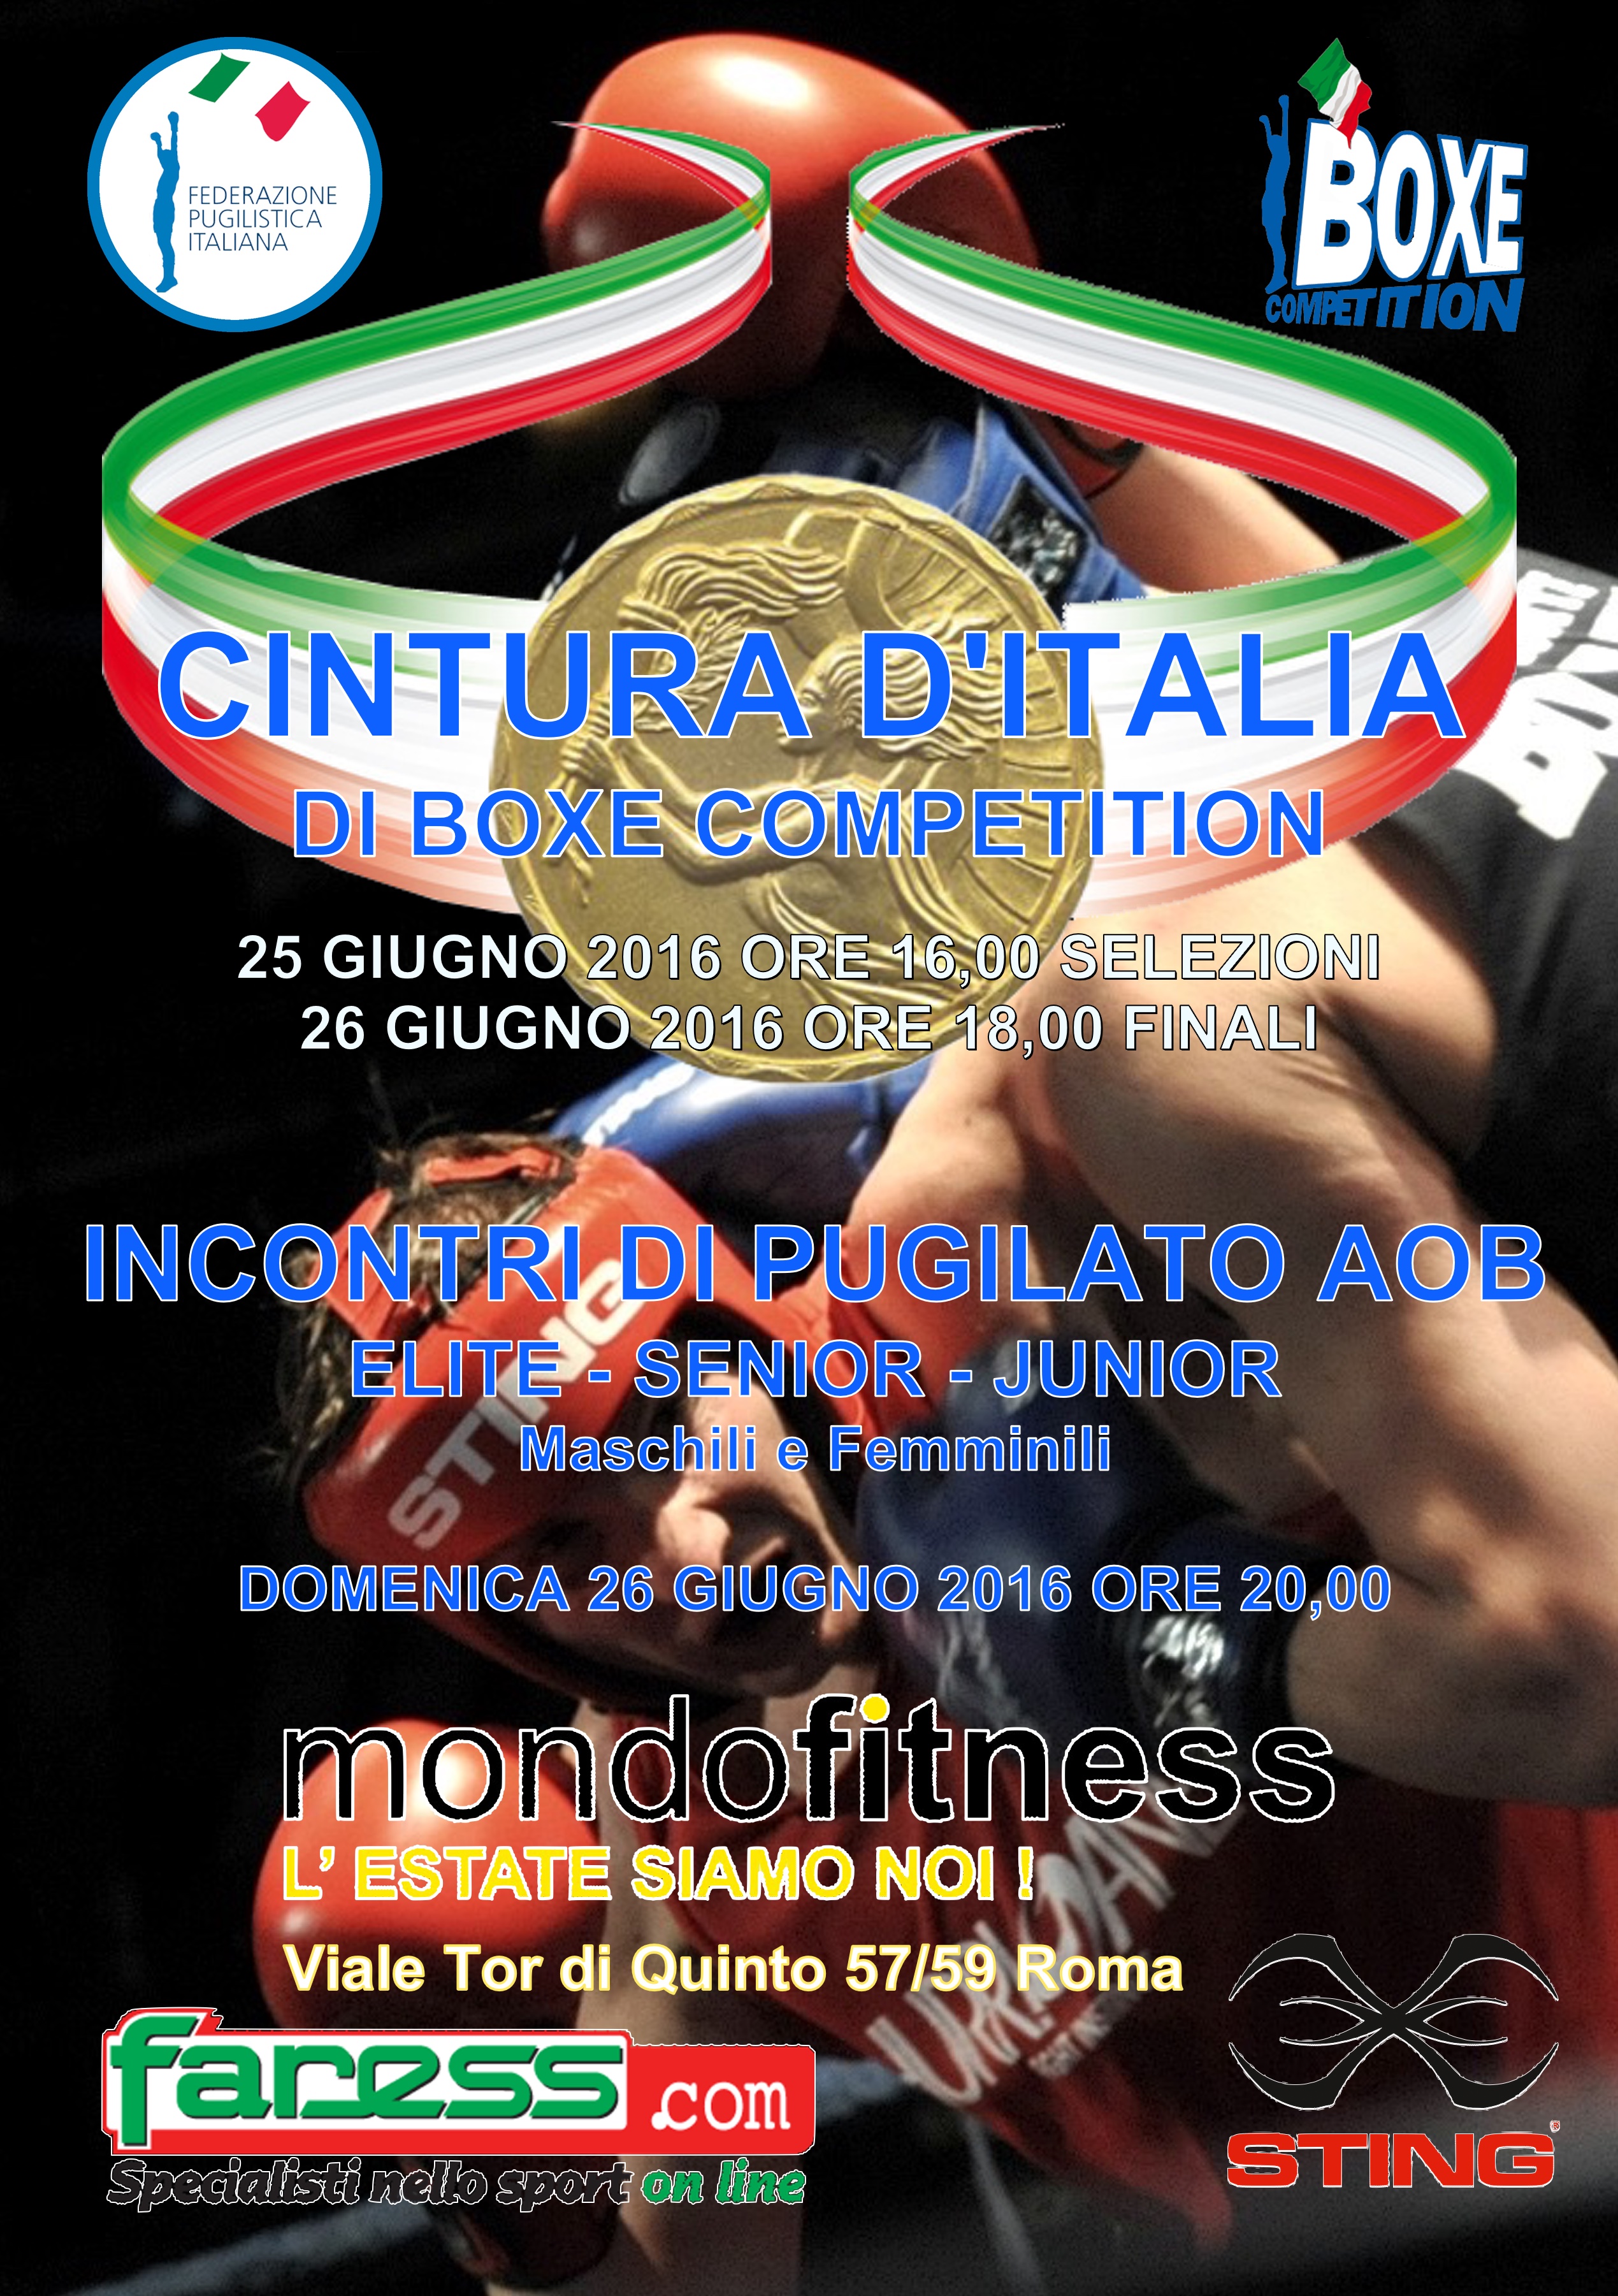 Il 25 e 26 Giugno a Roma presso Area GymBoxe FPI MondoFitness Il Torneo Cintura d'Italia 2016 di Boxe Competition #GymBoxe #PrePugilistica